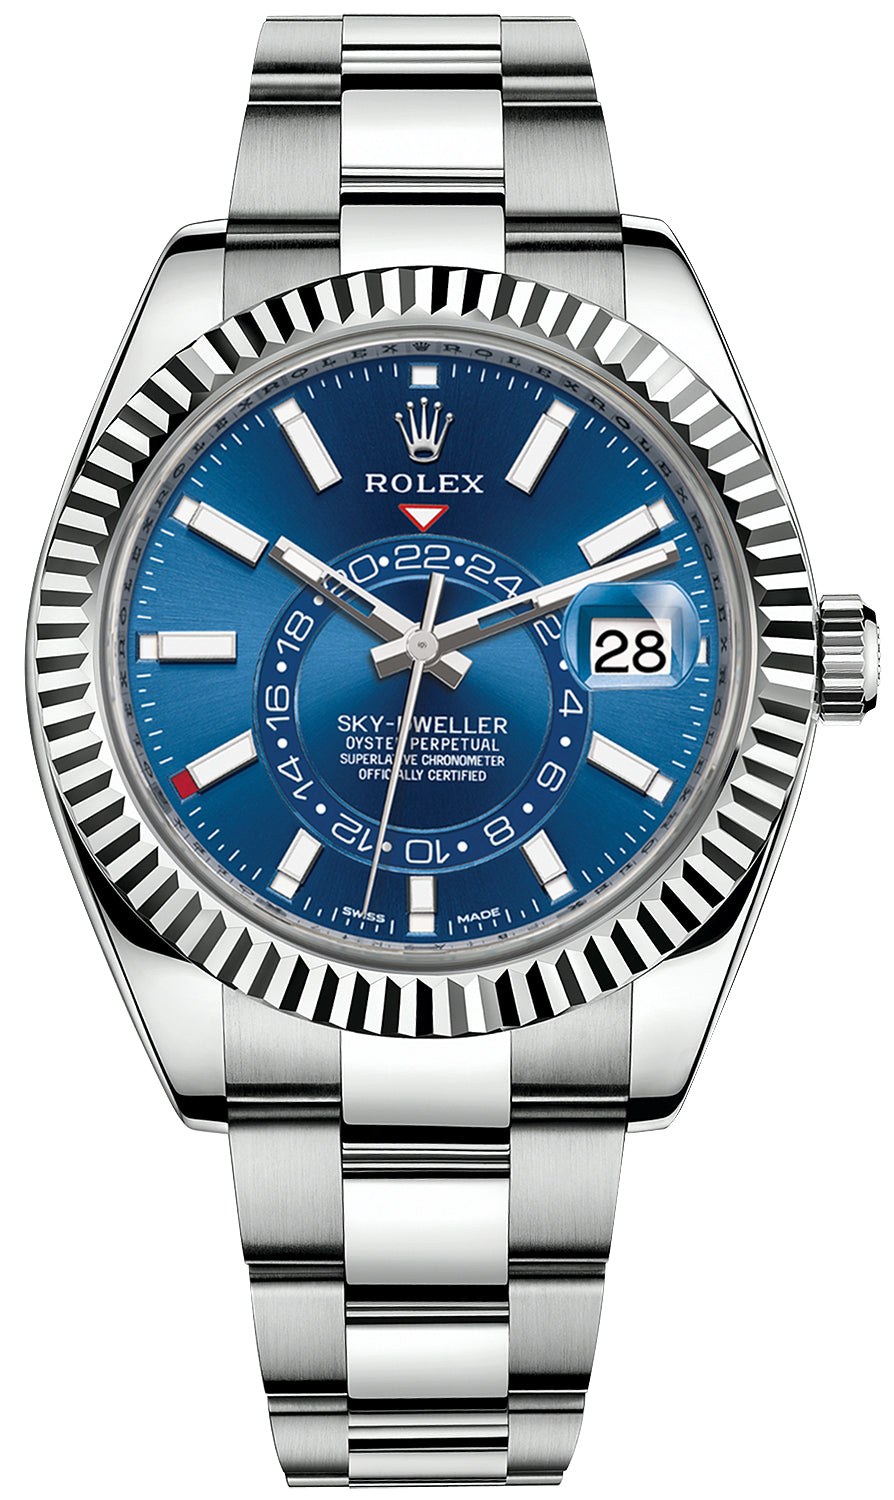 2021 Rolex Sky-Dweller Blue dial